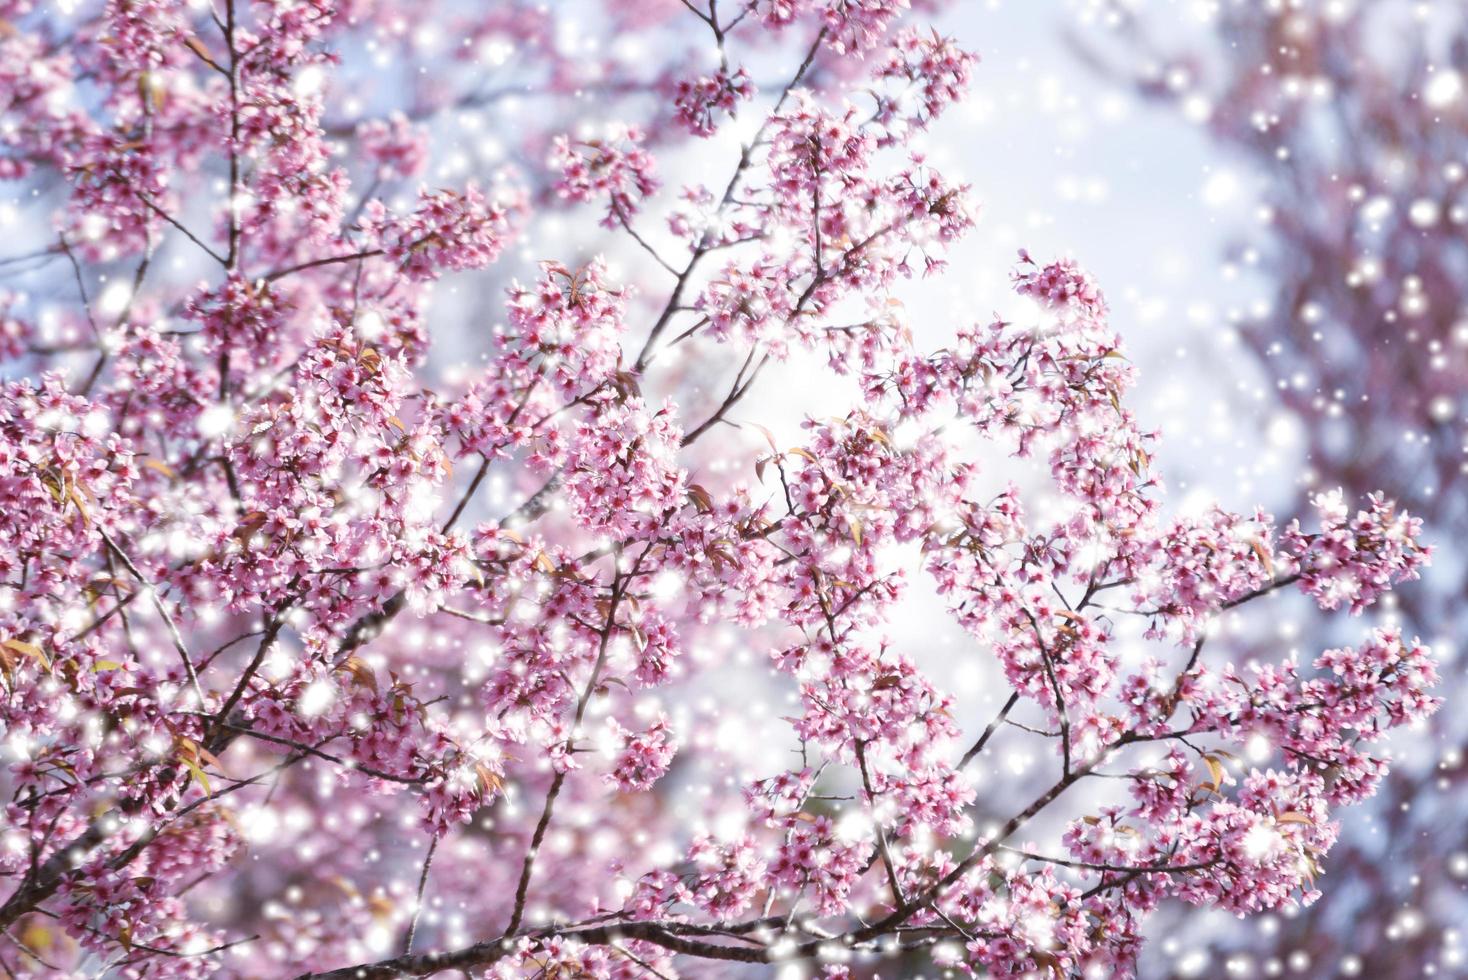 fiore di ciliegio himalayano selvatico, bellissimo fiore rosa sakura in inverno con paesaggio innevato foto